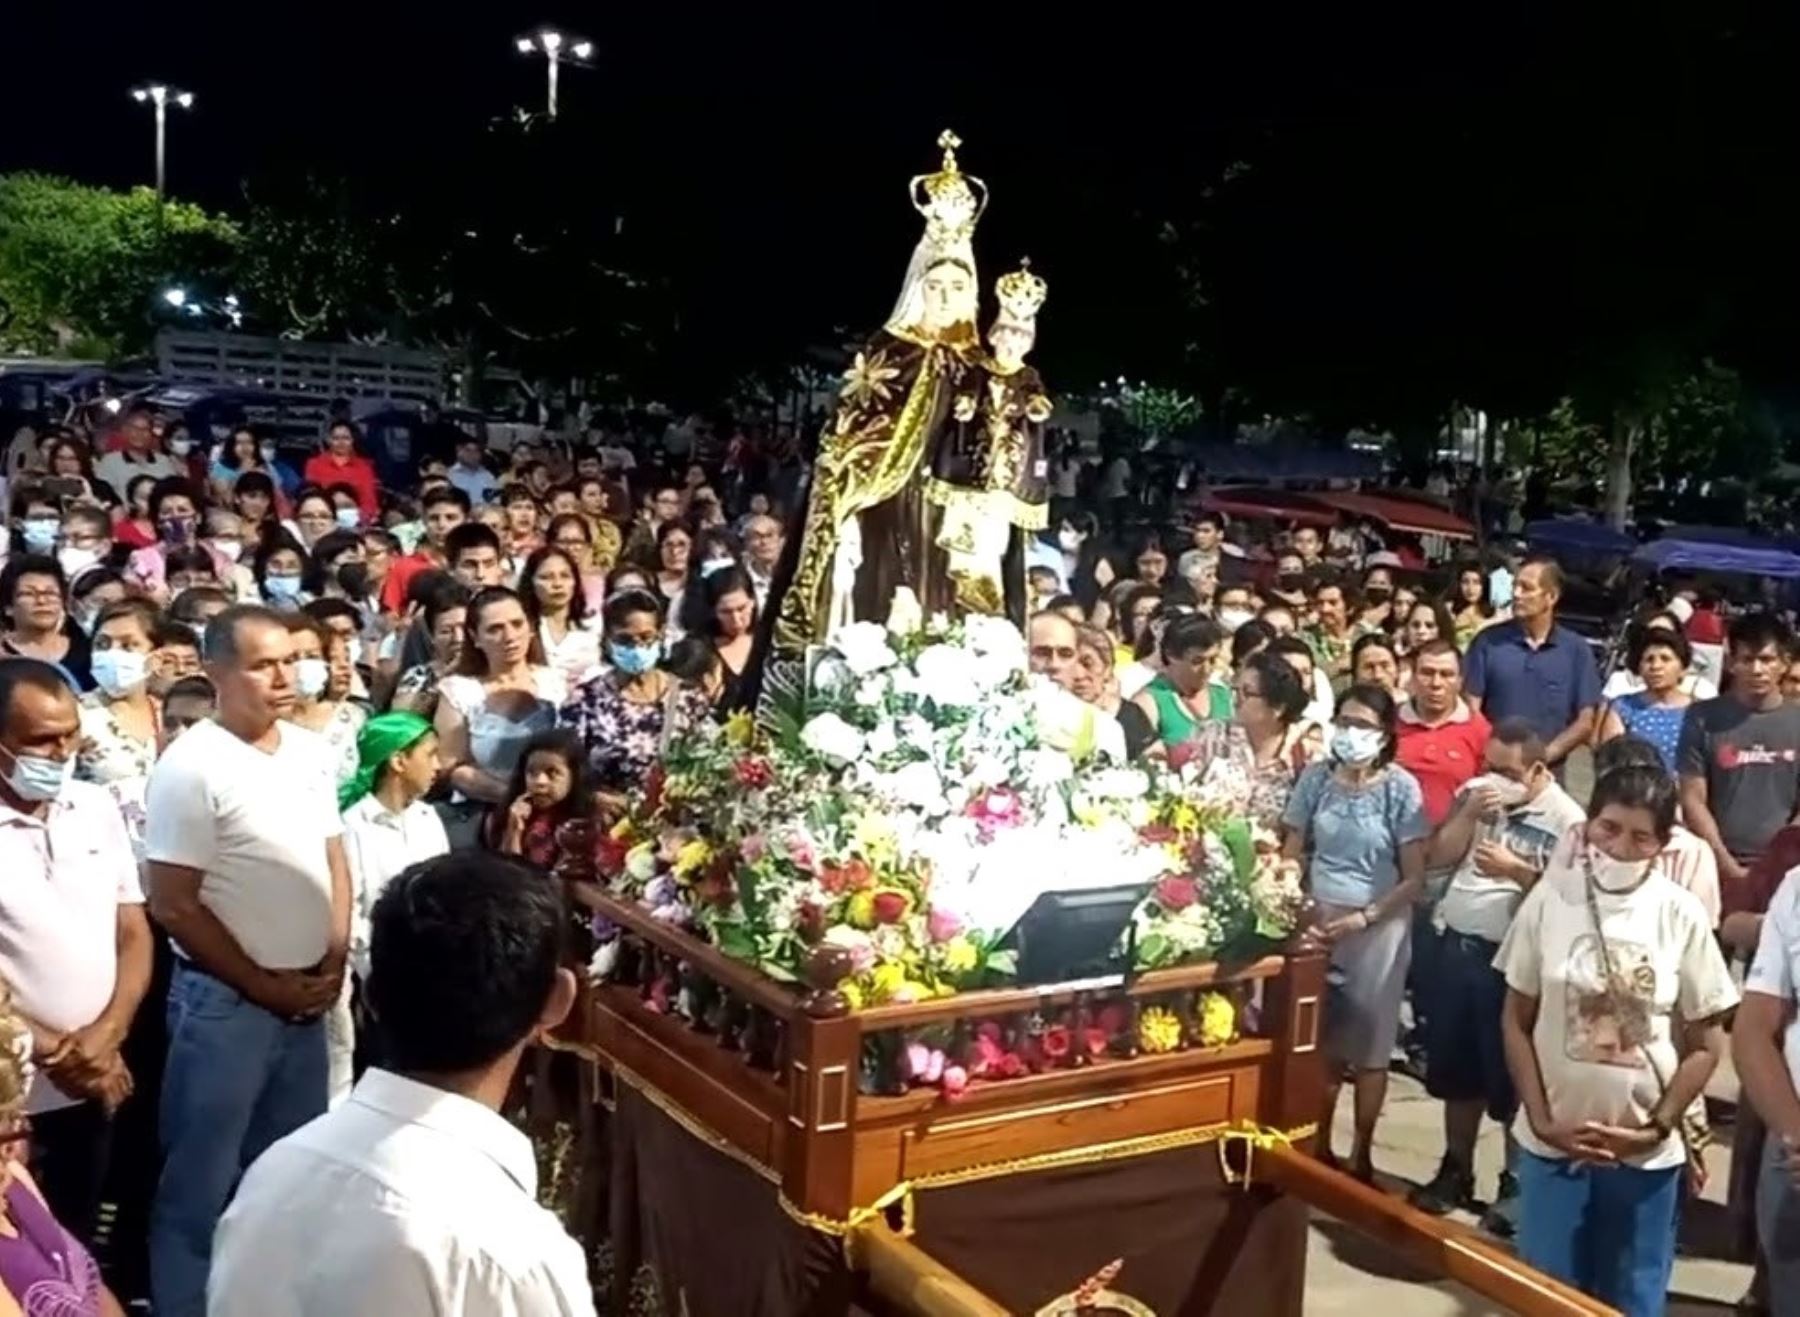 La ciudad de Saposoa inició los festejos en honor de la Virgen del Carmen, patrona de la capital de la provincia del Huallaga, región San Martín. Los festejos se prolongarán hasta el 16 de julio.